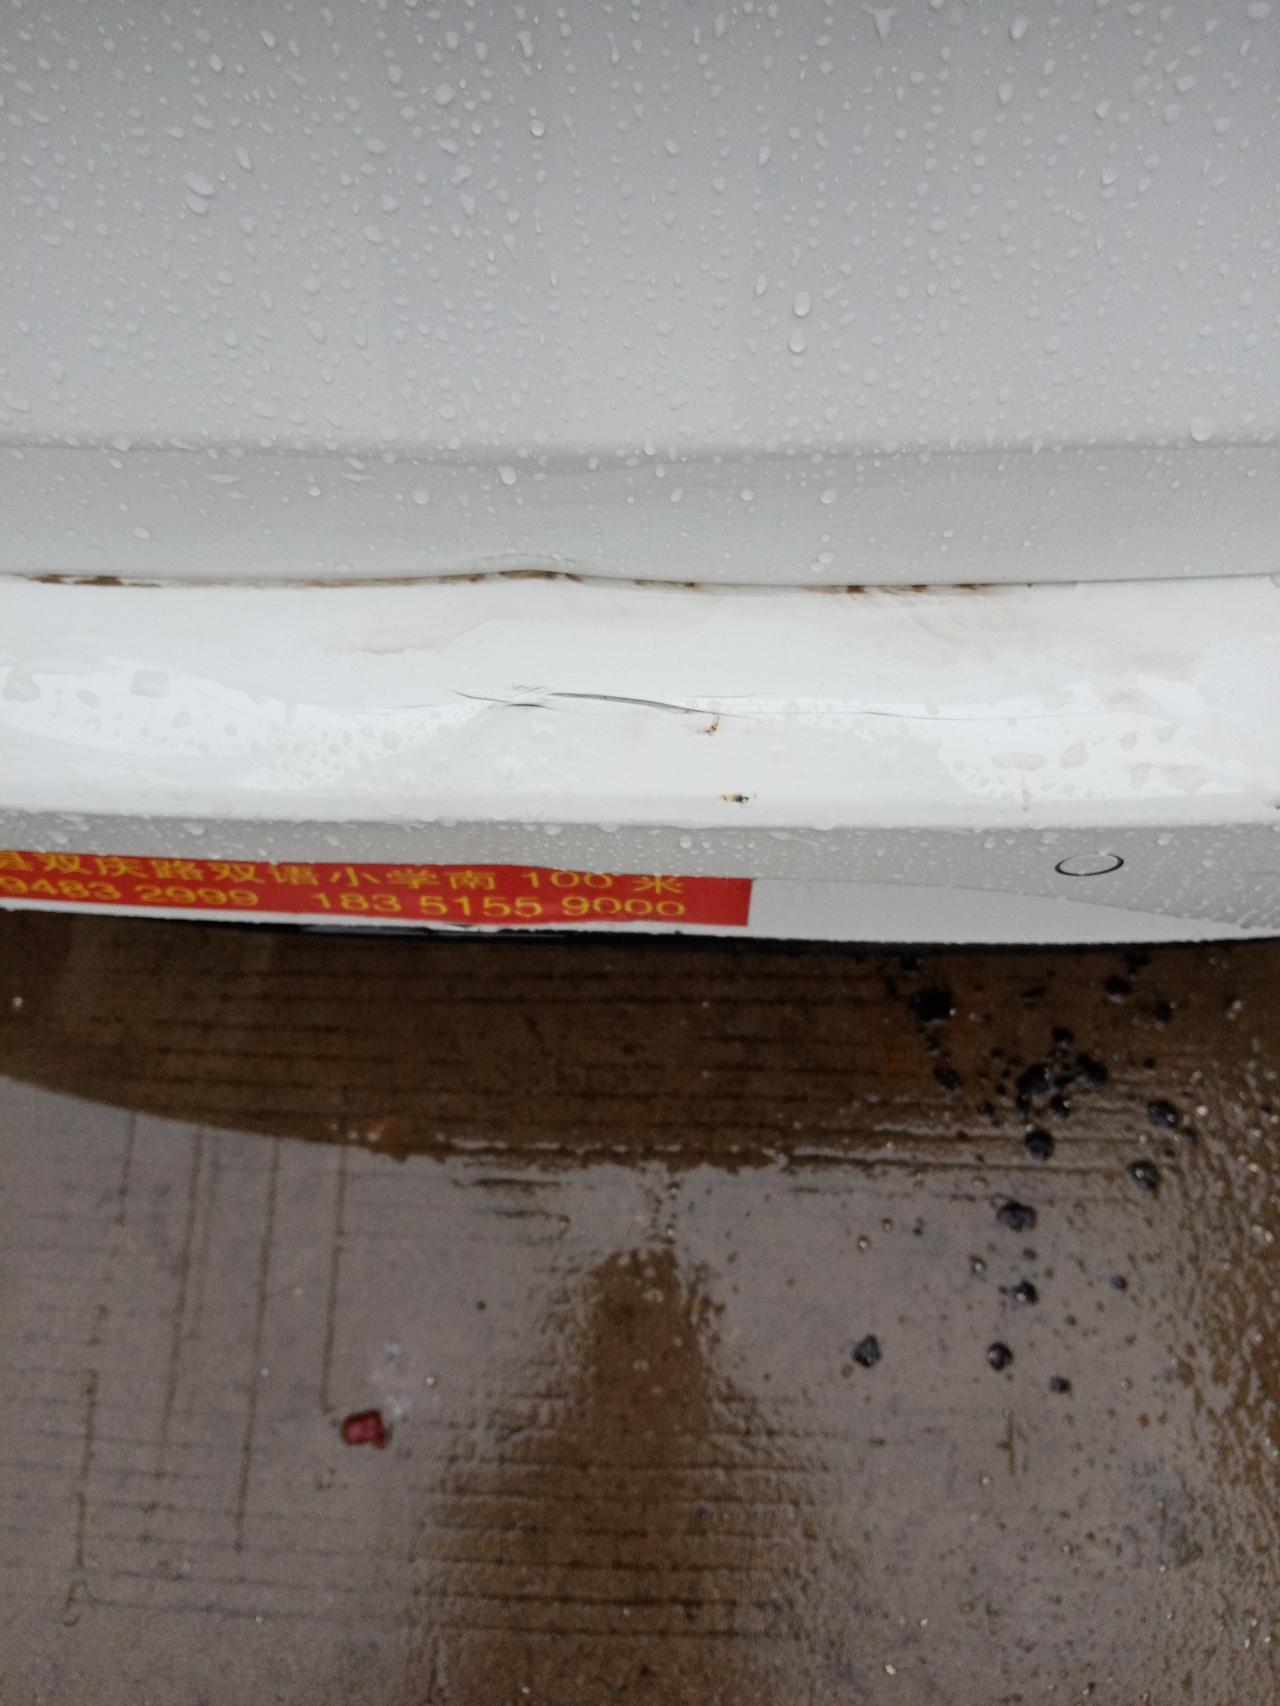 别克英朗 刚提车几天，昨晚下大雨倒车时撞到了杆子，求大神指点迷津 这个该怎么处理。走保险吗？还是怎么弄